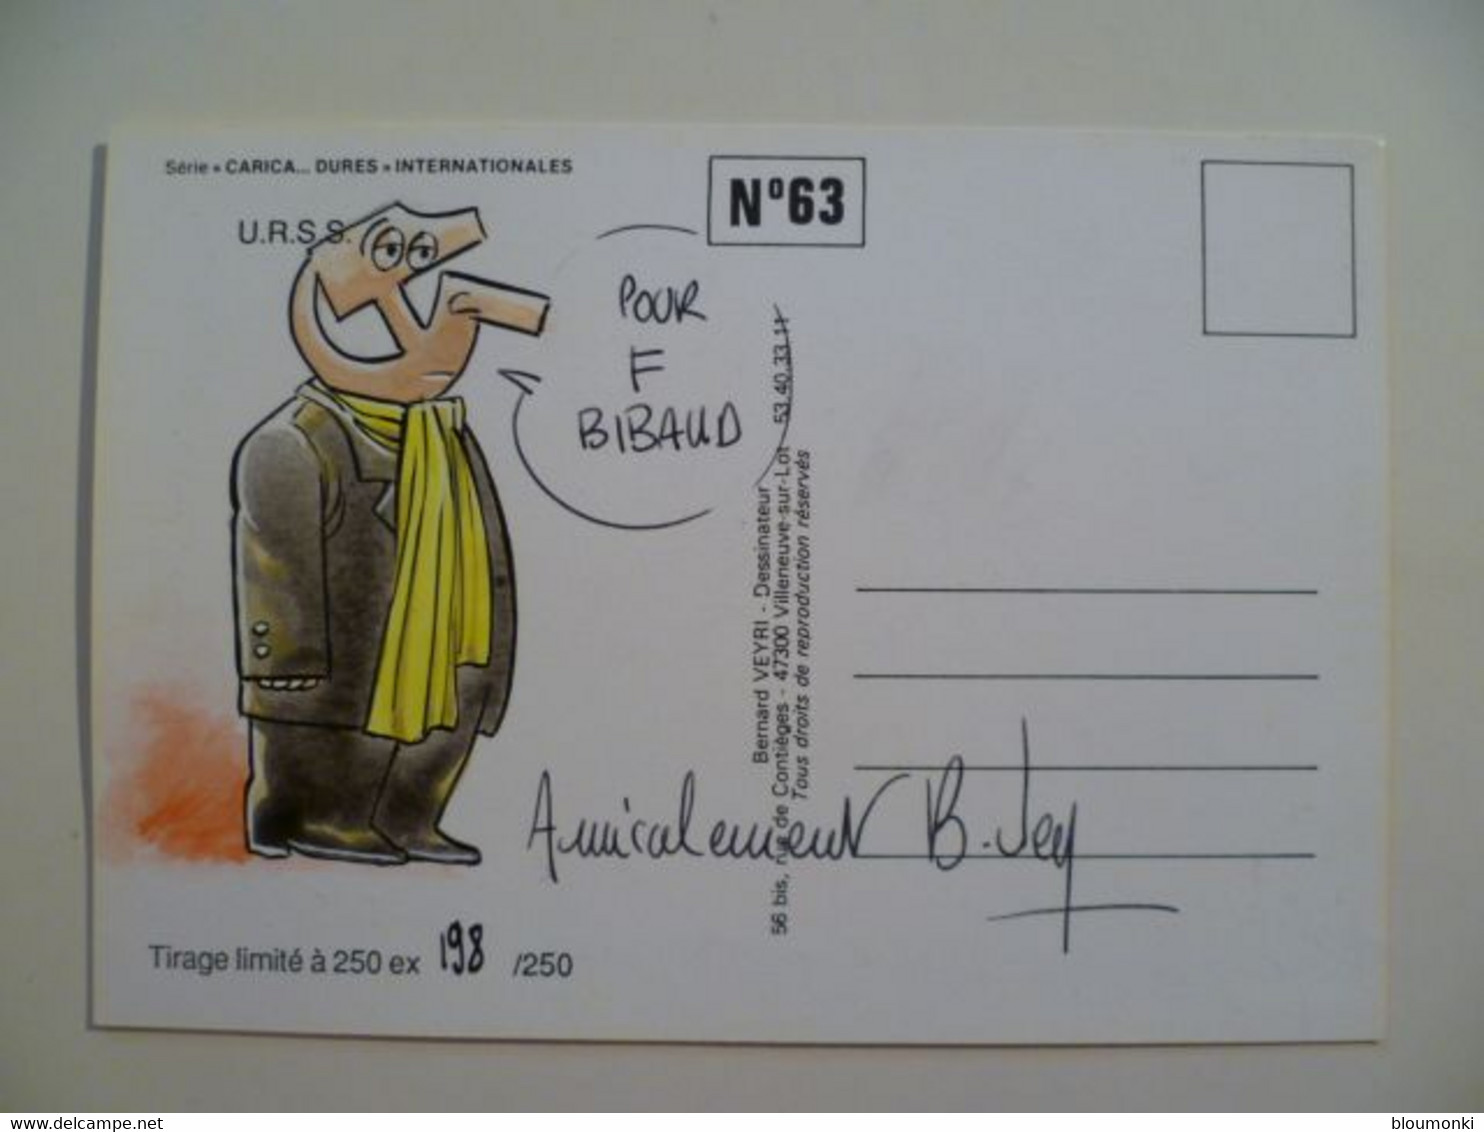 Carte Postale Illustrateur Bernard VEYRI / Dessin Unique Dédicace F Bibaud / Caricature Mikhaïl Gorbatchev Lénine 1989 - Veyri, Bernard